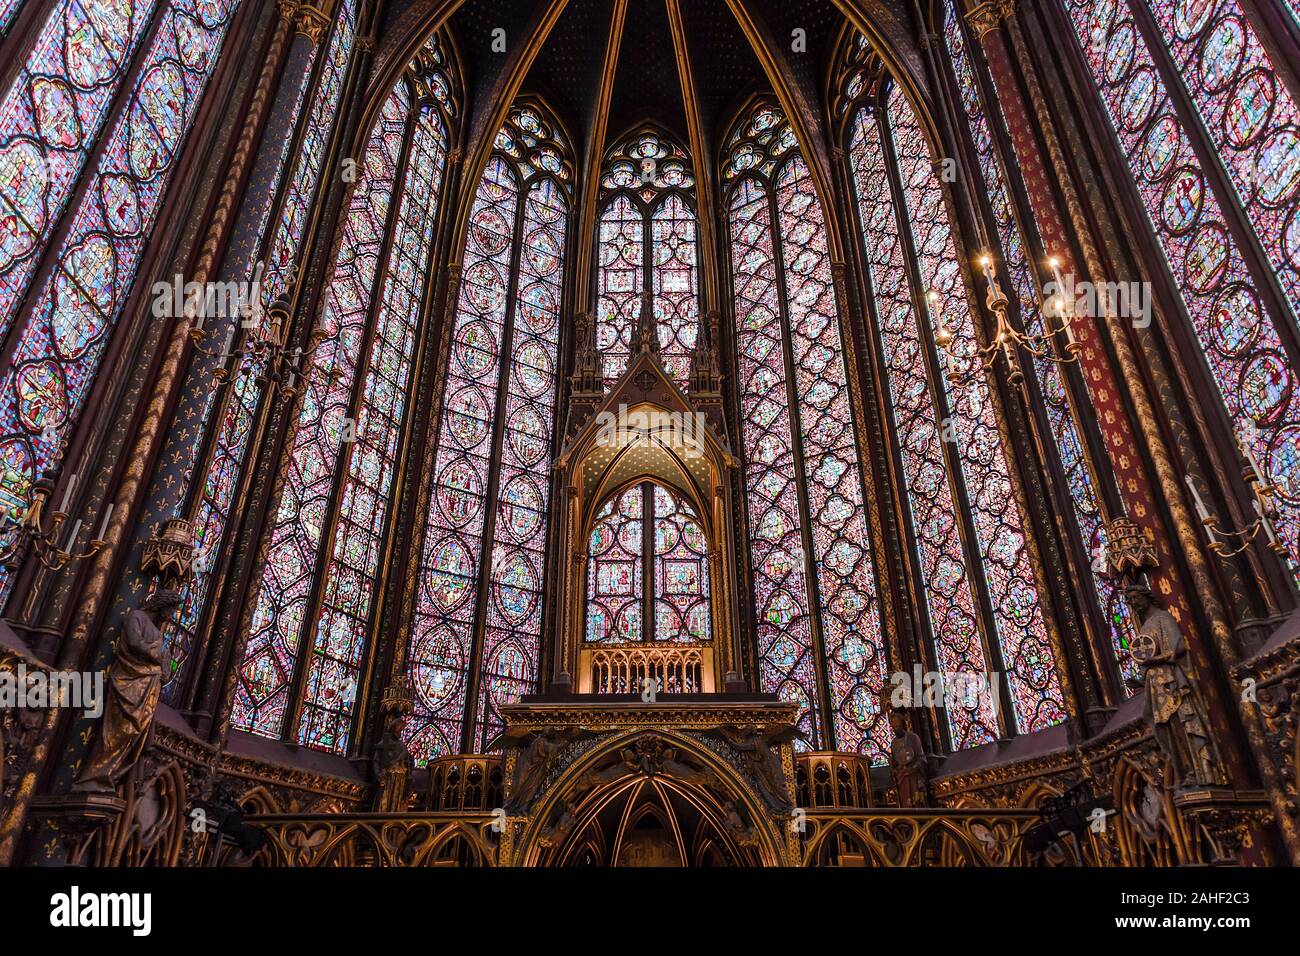 PARIS, Frankreich, 18. MAI 2016: Sainte-Chapelle (Heilige Kapelle) - Eine königliche mittelalterlichen gotischen Kapelle in Paris, Frankreich Stockfoto